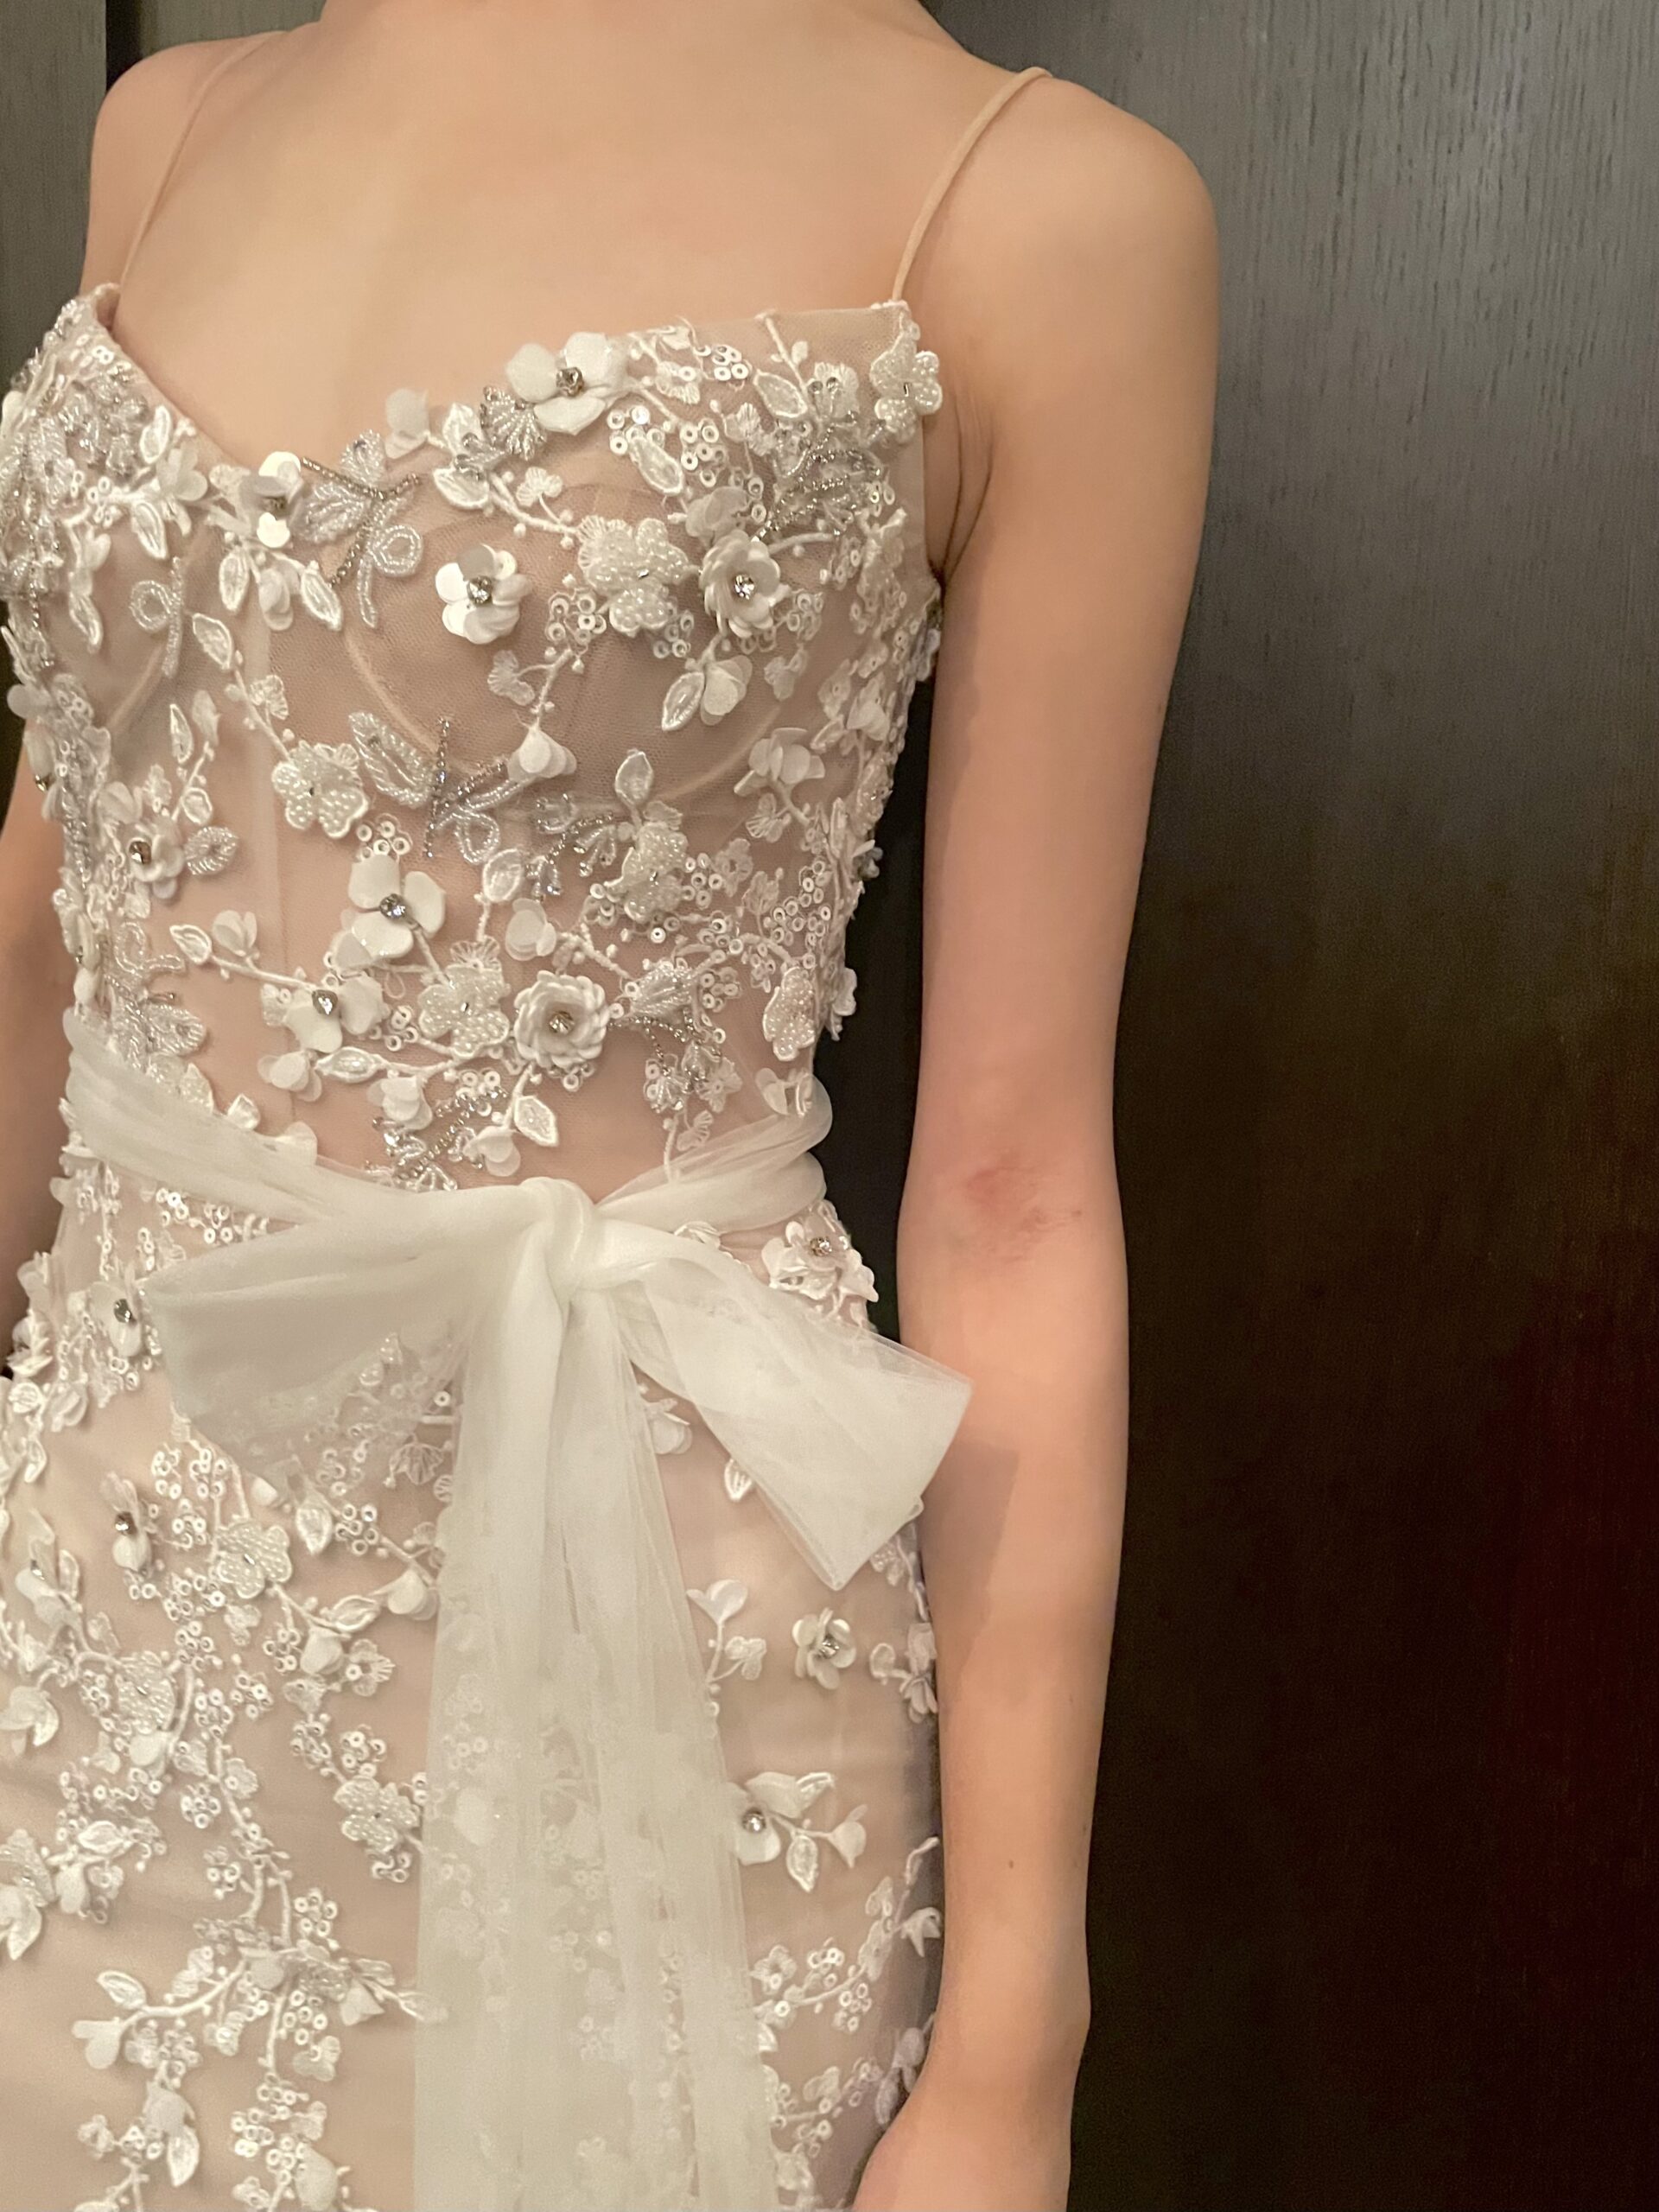 3Dフラワーや草花の刺繍が美しい今最もホットな中東ブランドのリズマルチネスのウェディングドレス